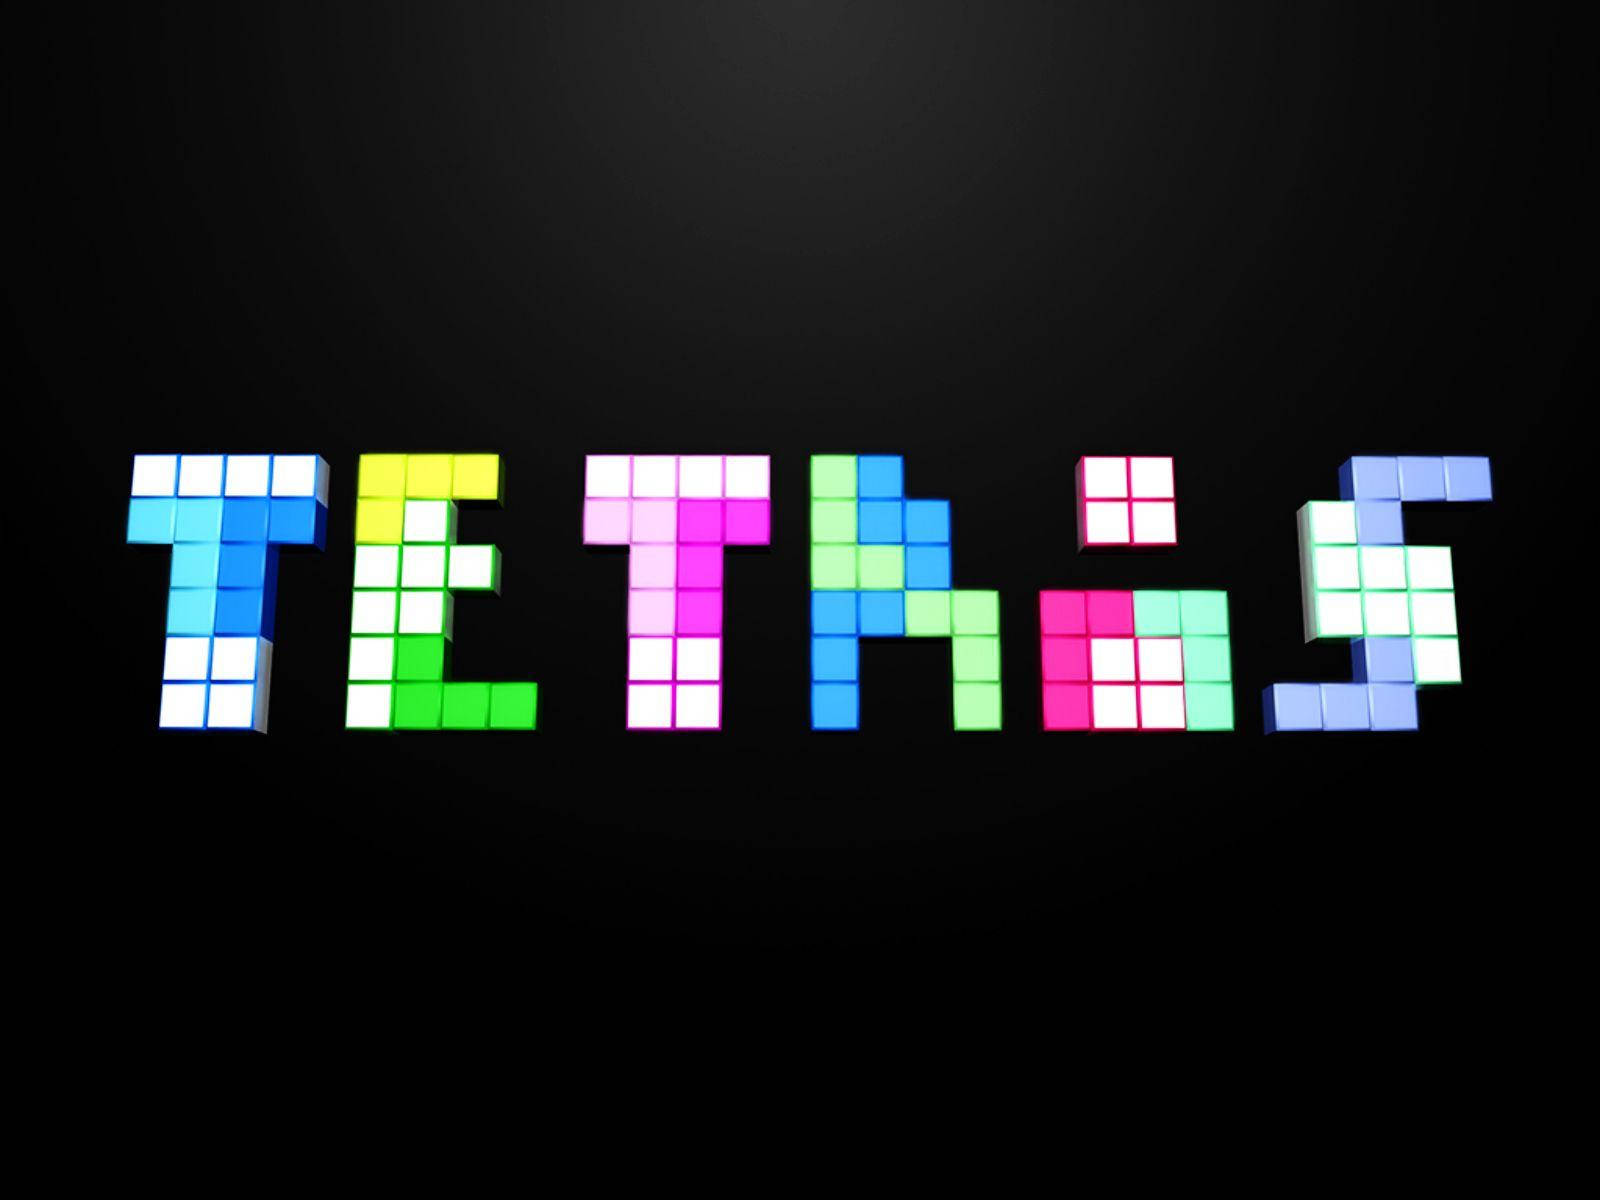 Tetristitel Aus Tetris-steinen Gemacht. Wallpaper